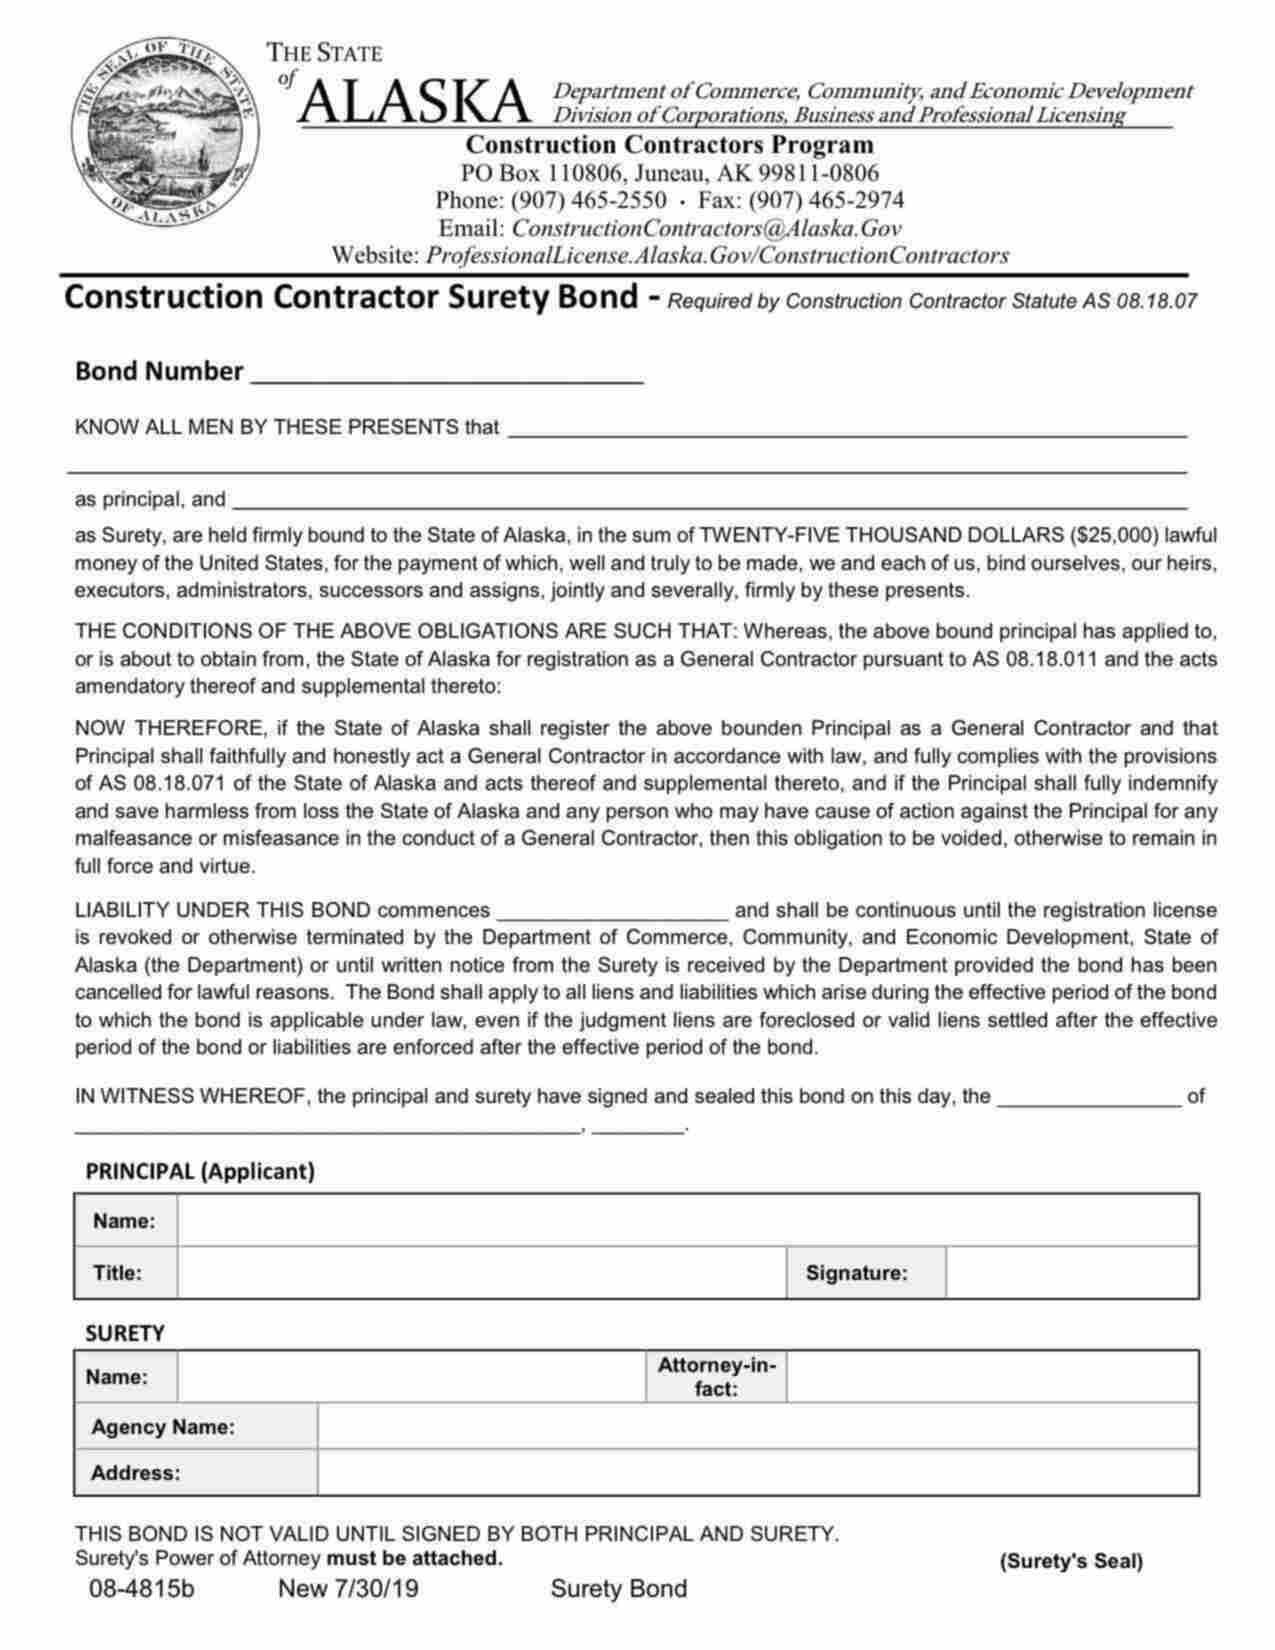 Alaska Construction Contractor - General Bond Form